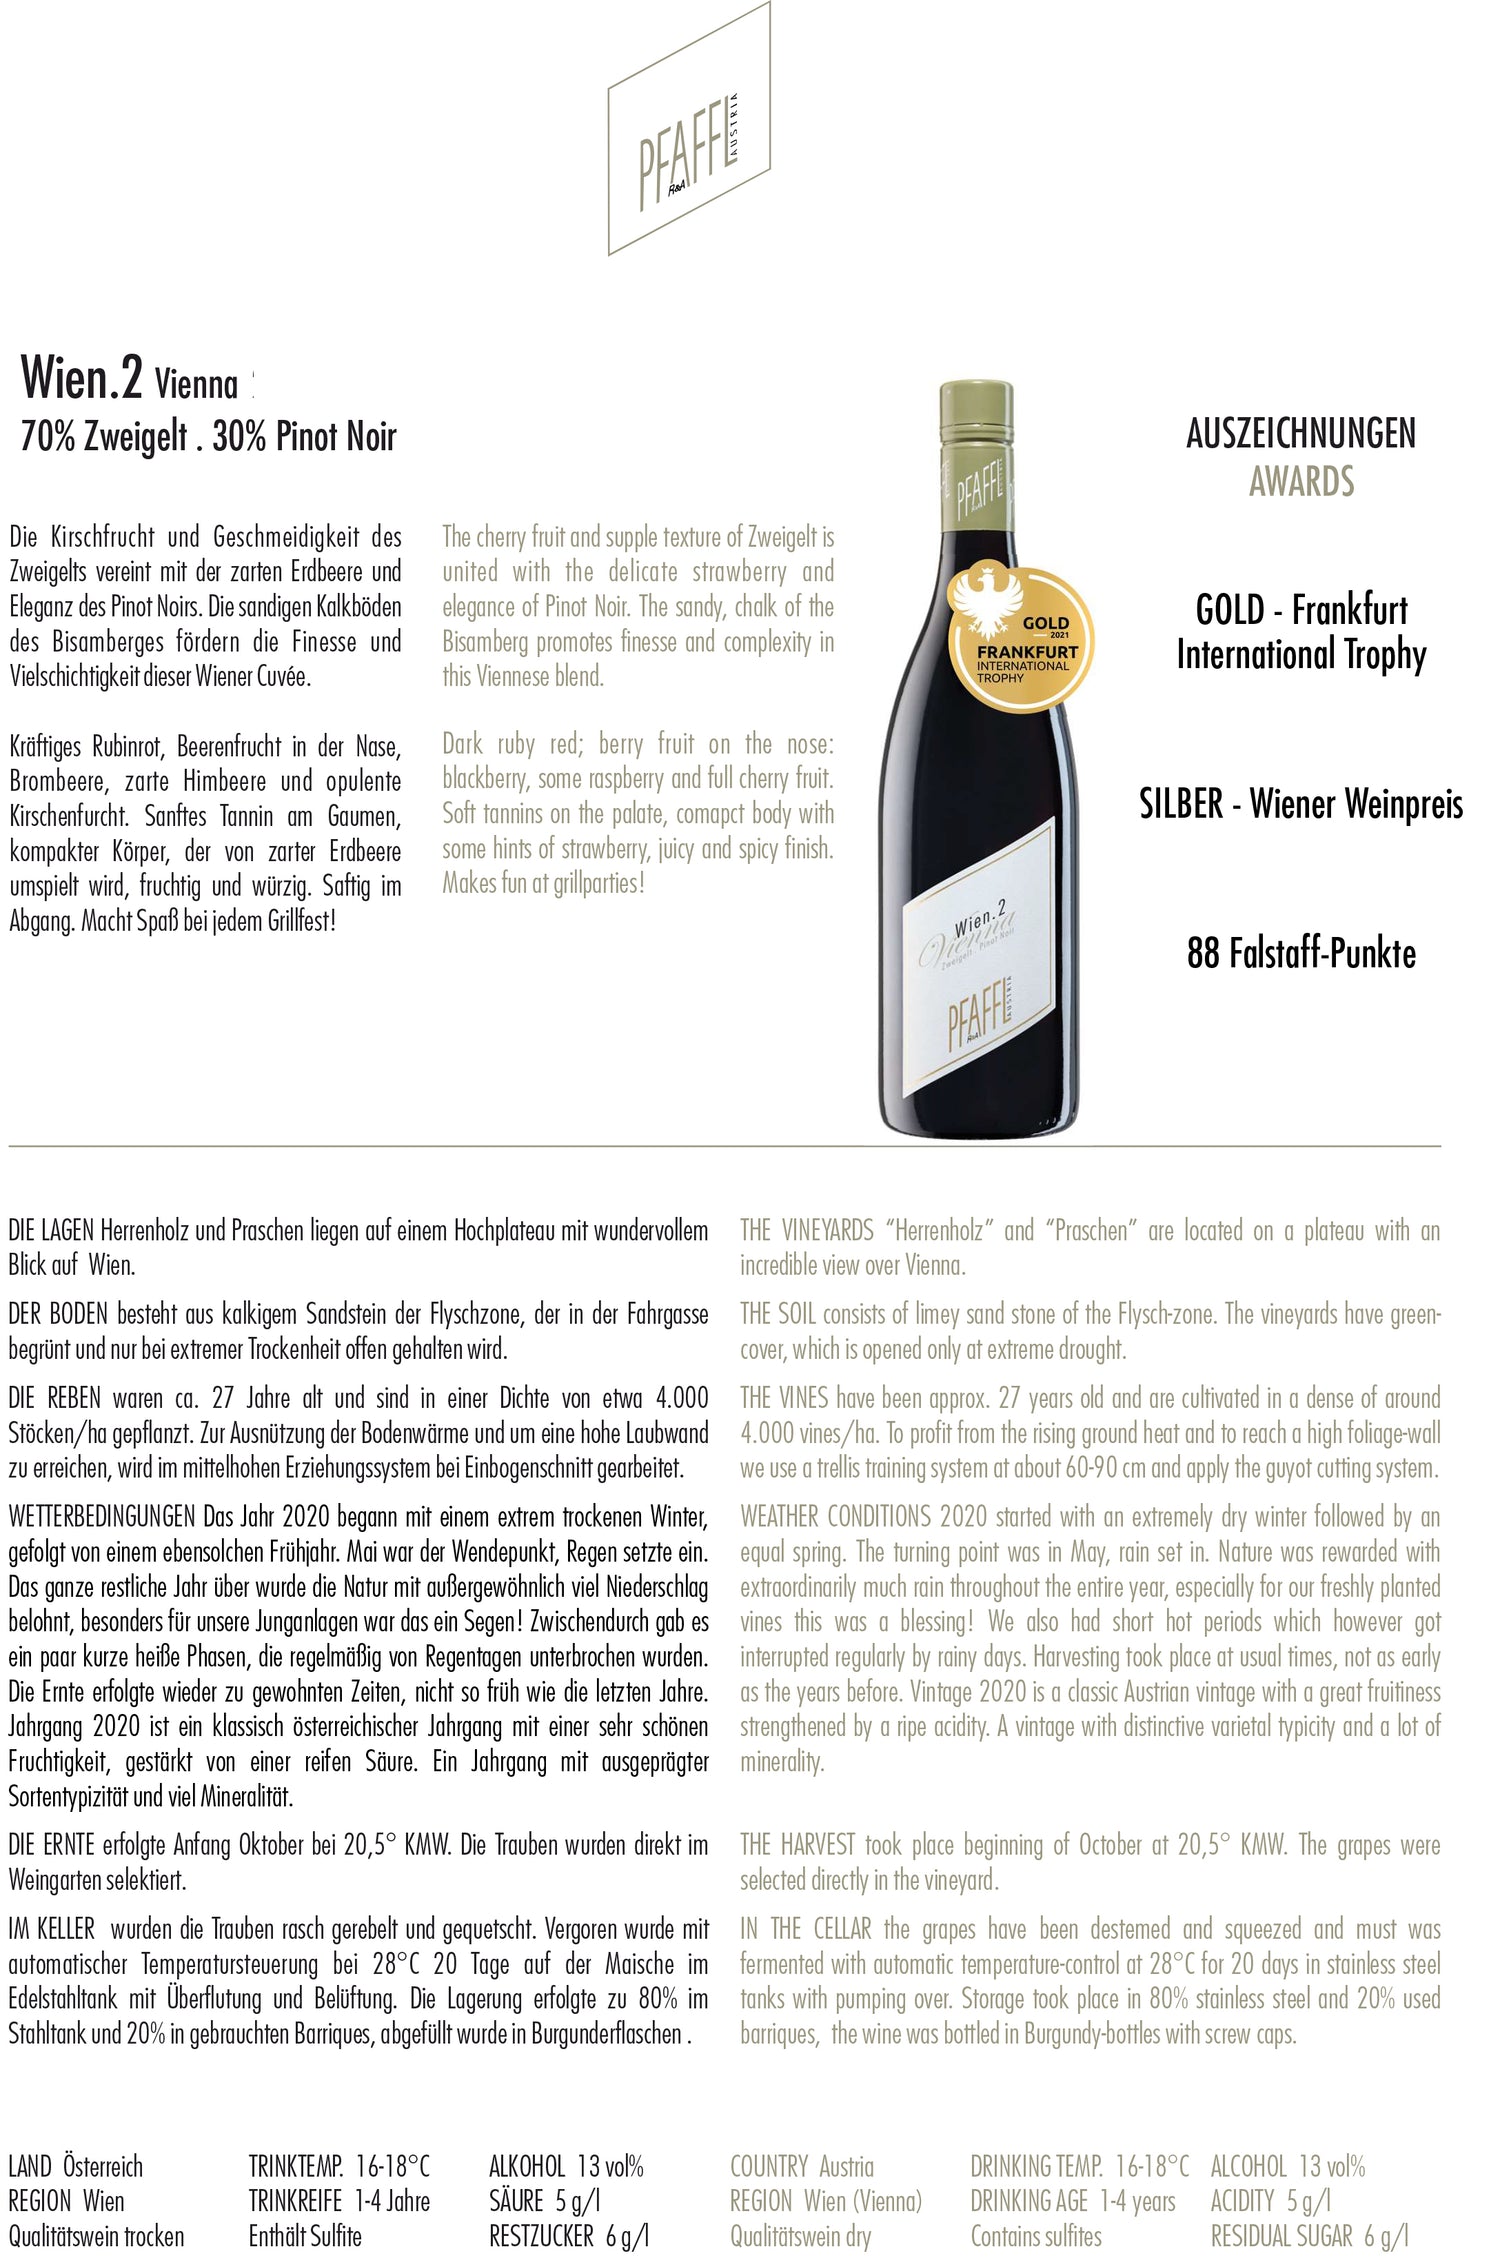 Weingut R&A PFAFFL Wien. 2 Zweigelt/Pinot Noir 2019 - Bloom Concept